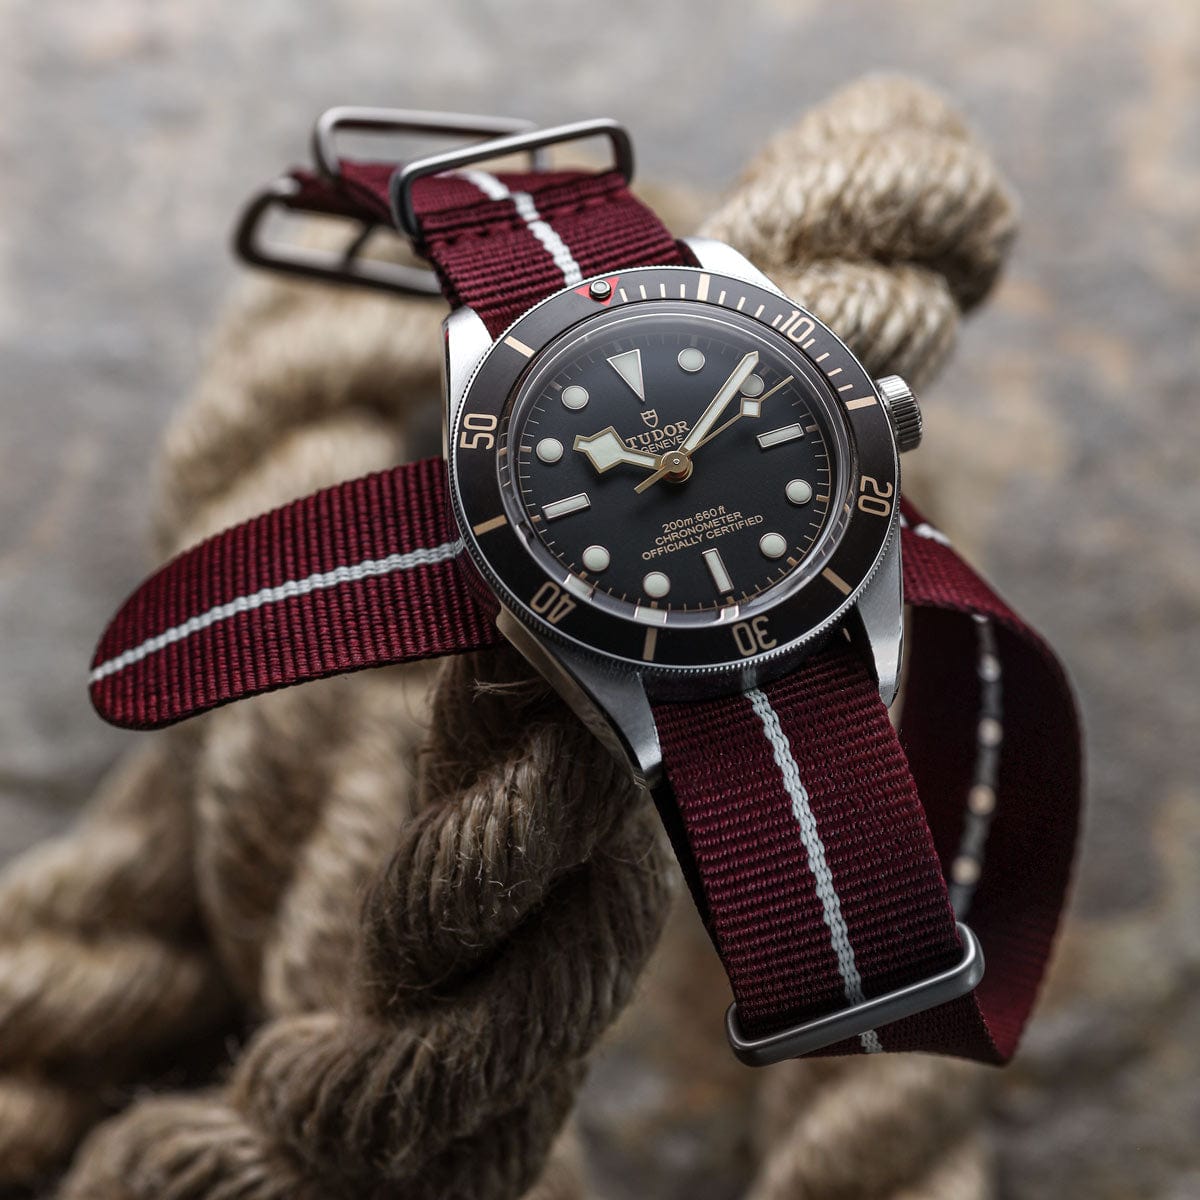 ZULUDIVER British Military Watch Strap: CADET Marine Nationale - Burgundy & White